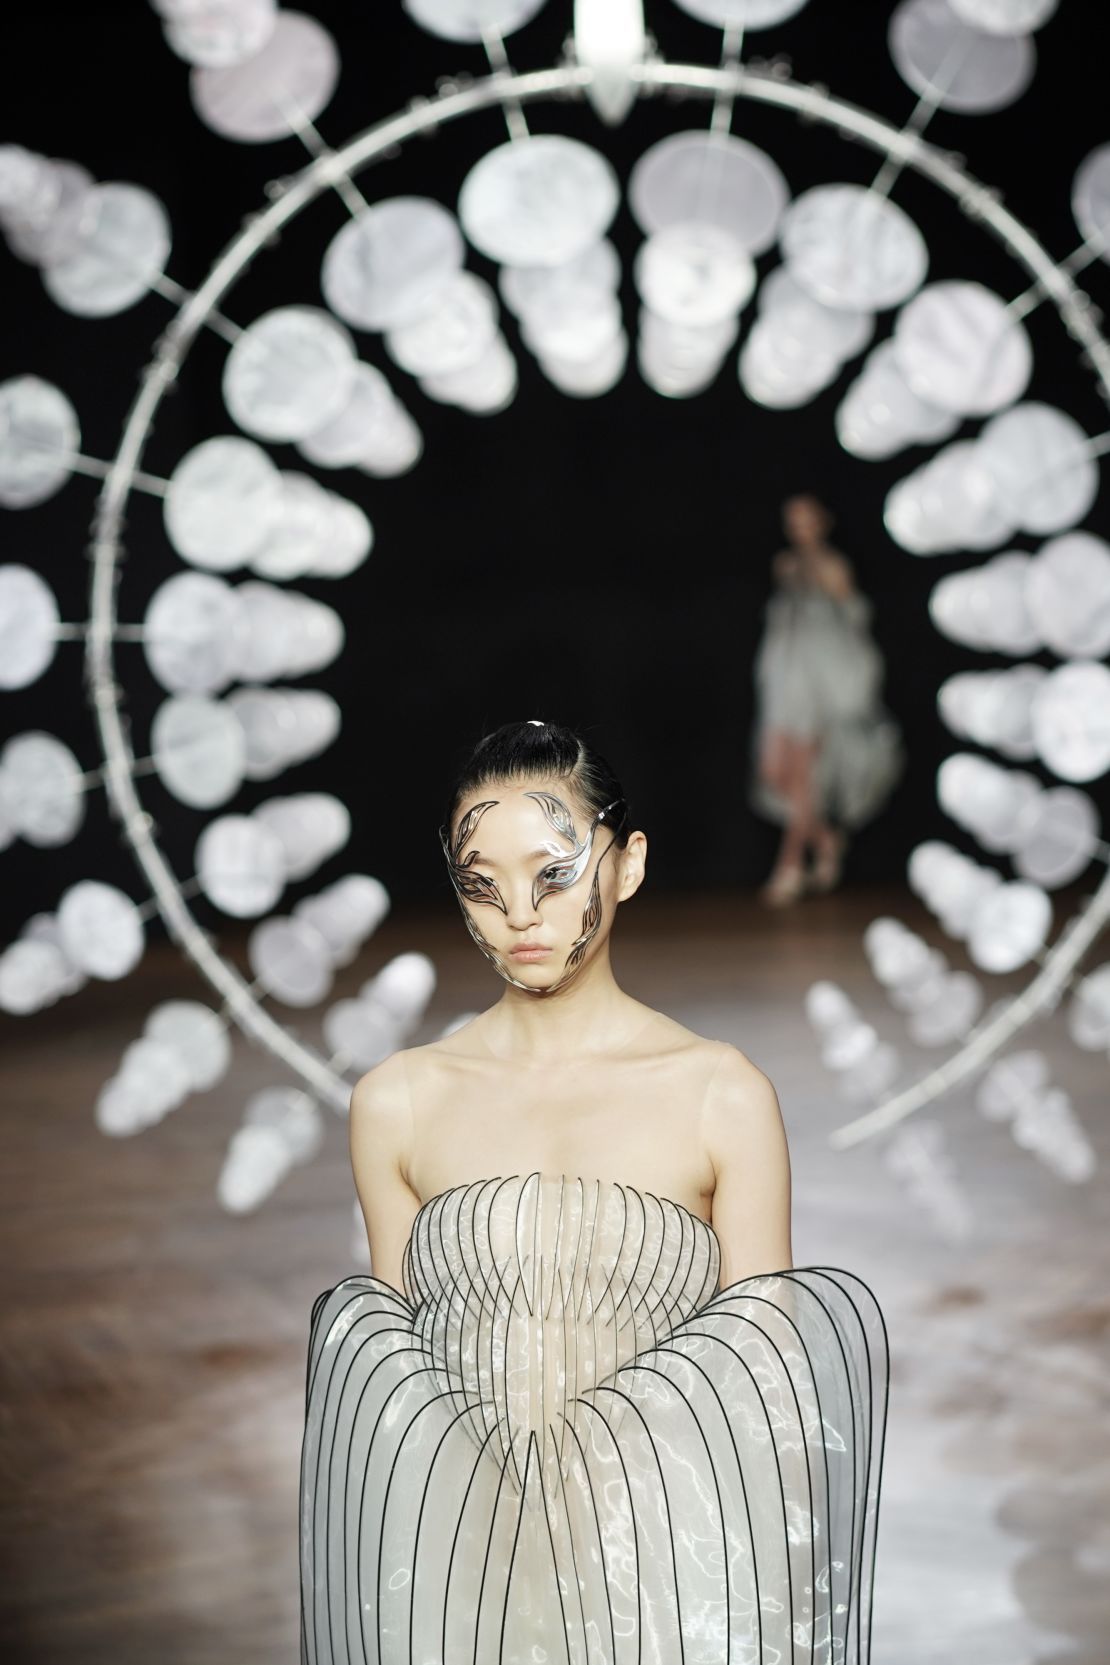 Iris van Herpen's Haute Couture show in 2019 was filled extraterrestrial-looking creations.